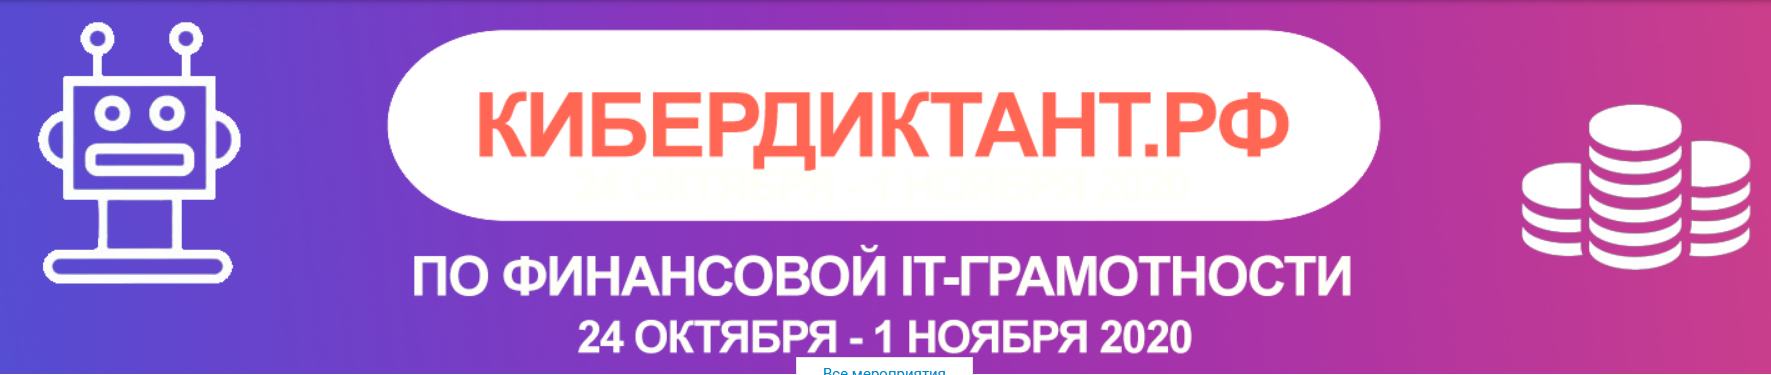 Всероссийский кибердиктант по финансовой IT-грамотности в ННГУ